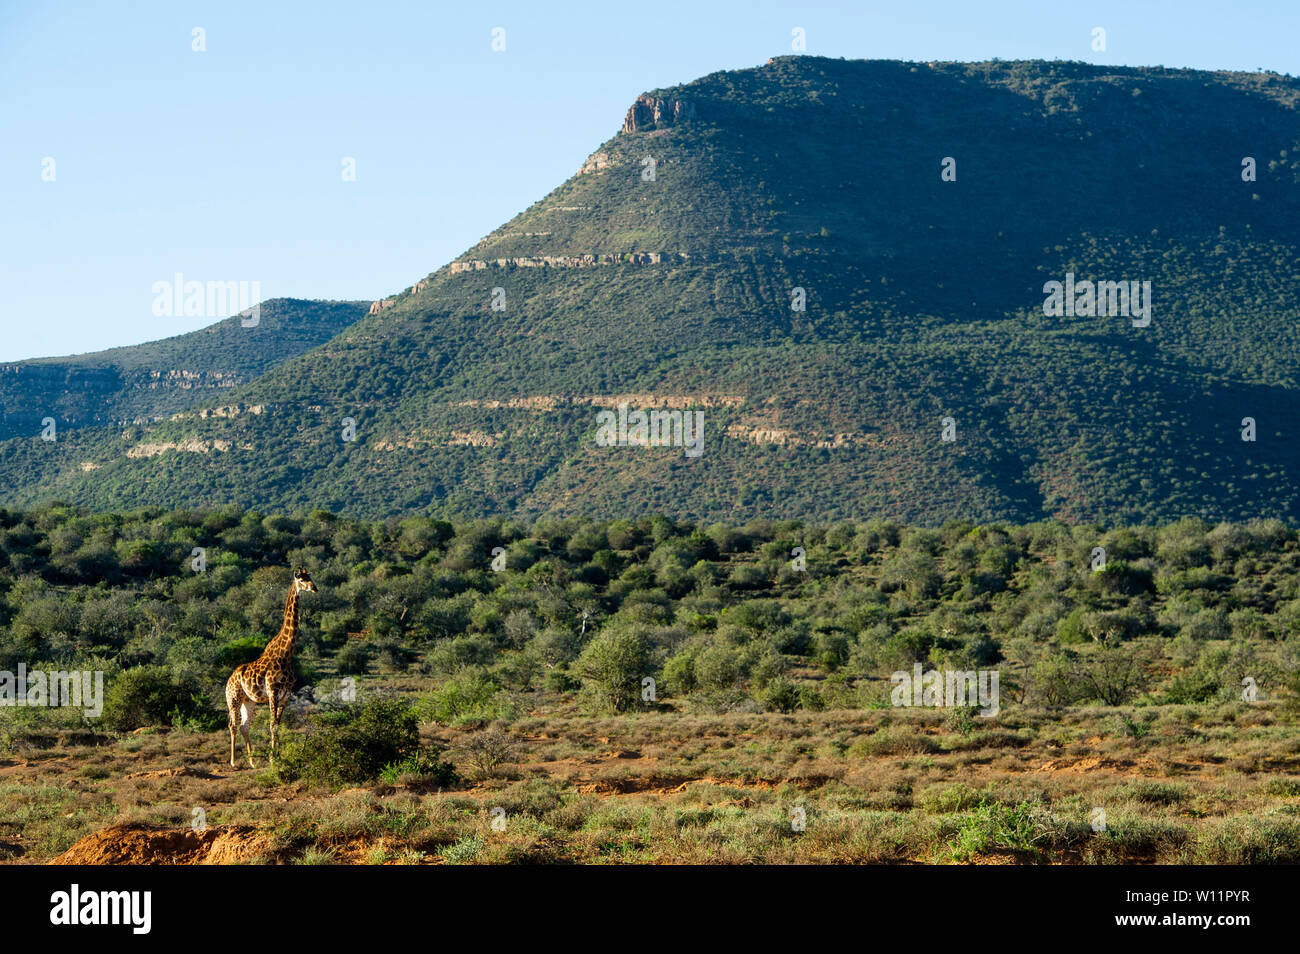 Southern giraffe, Giraffa camelopardalis giraffa, Samara Game Reserve, South Africa Stock Photo